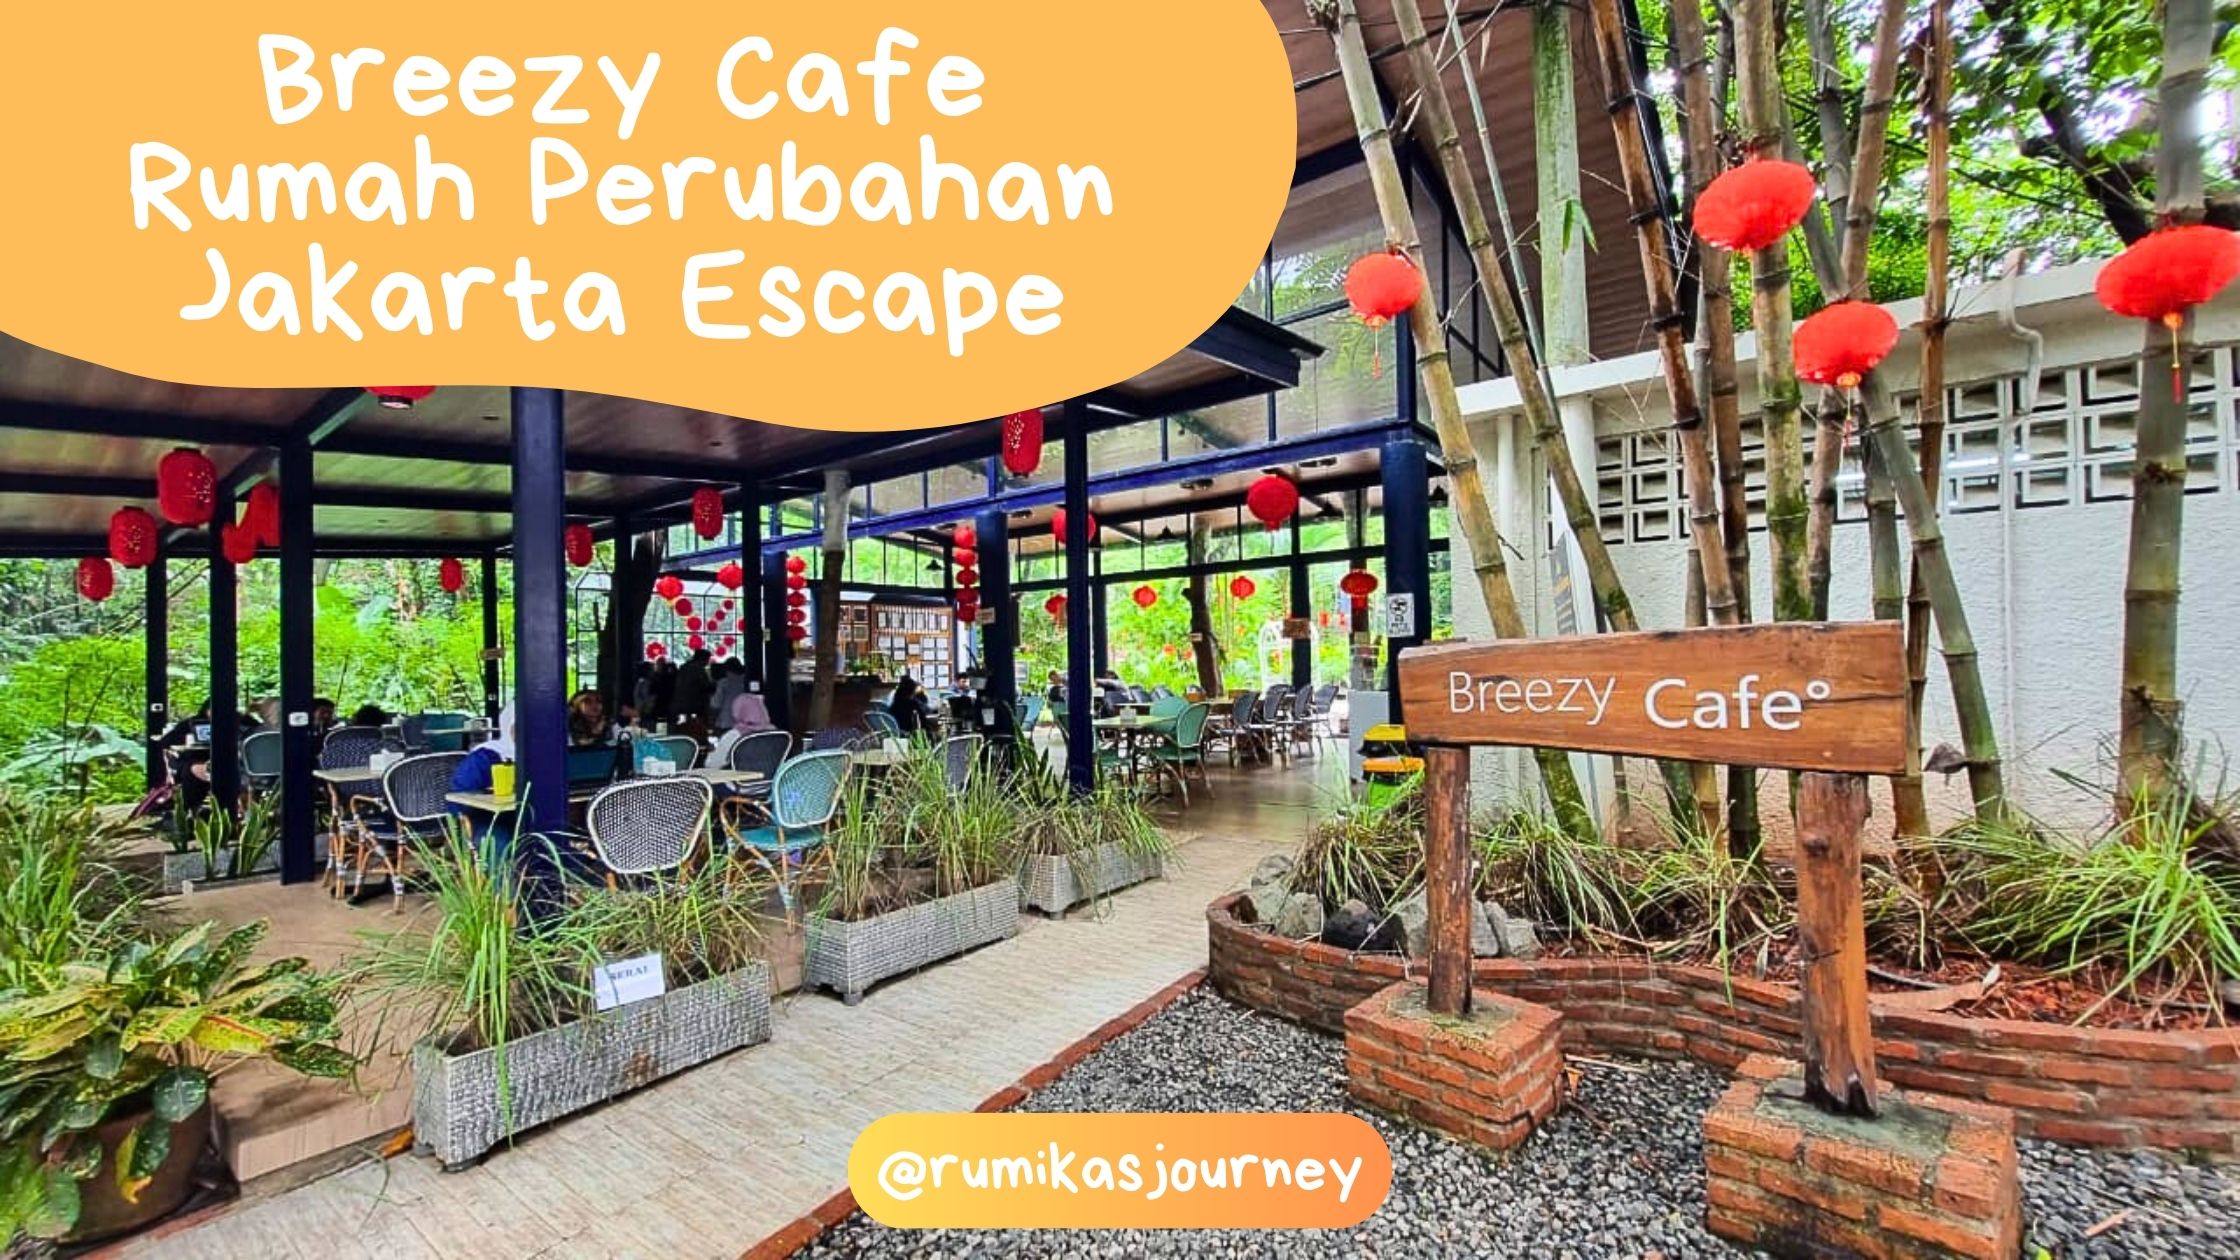 Breezy Cafe Rumah Perubahan Jakarta Escape